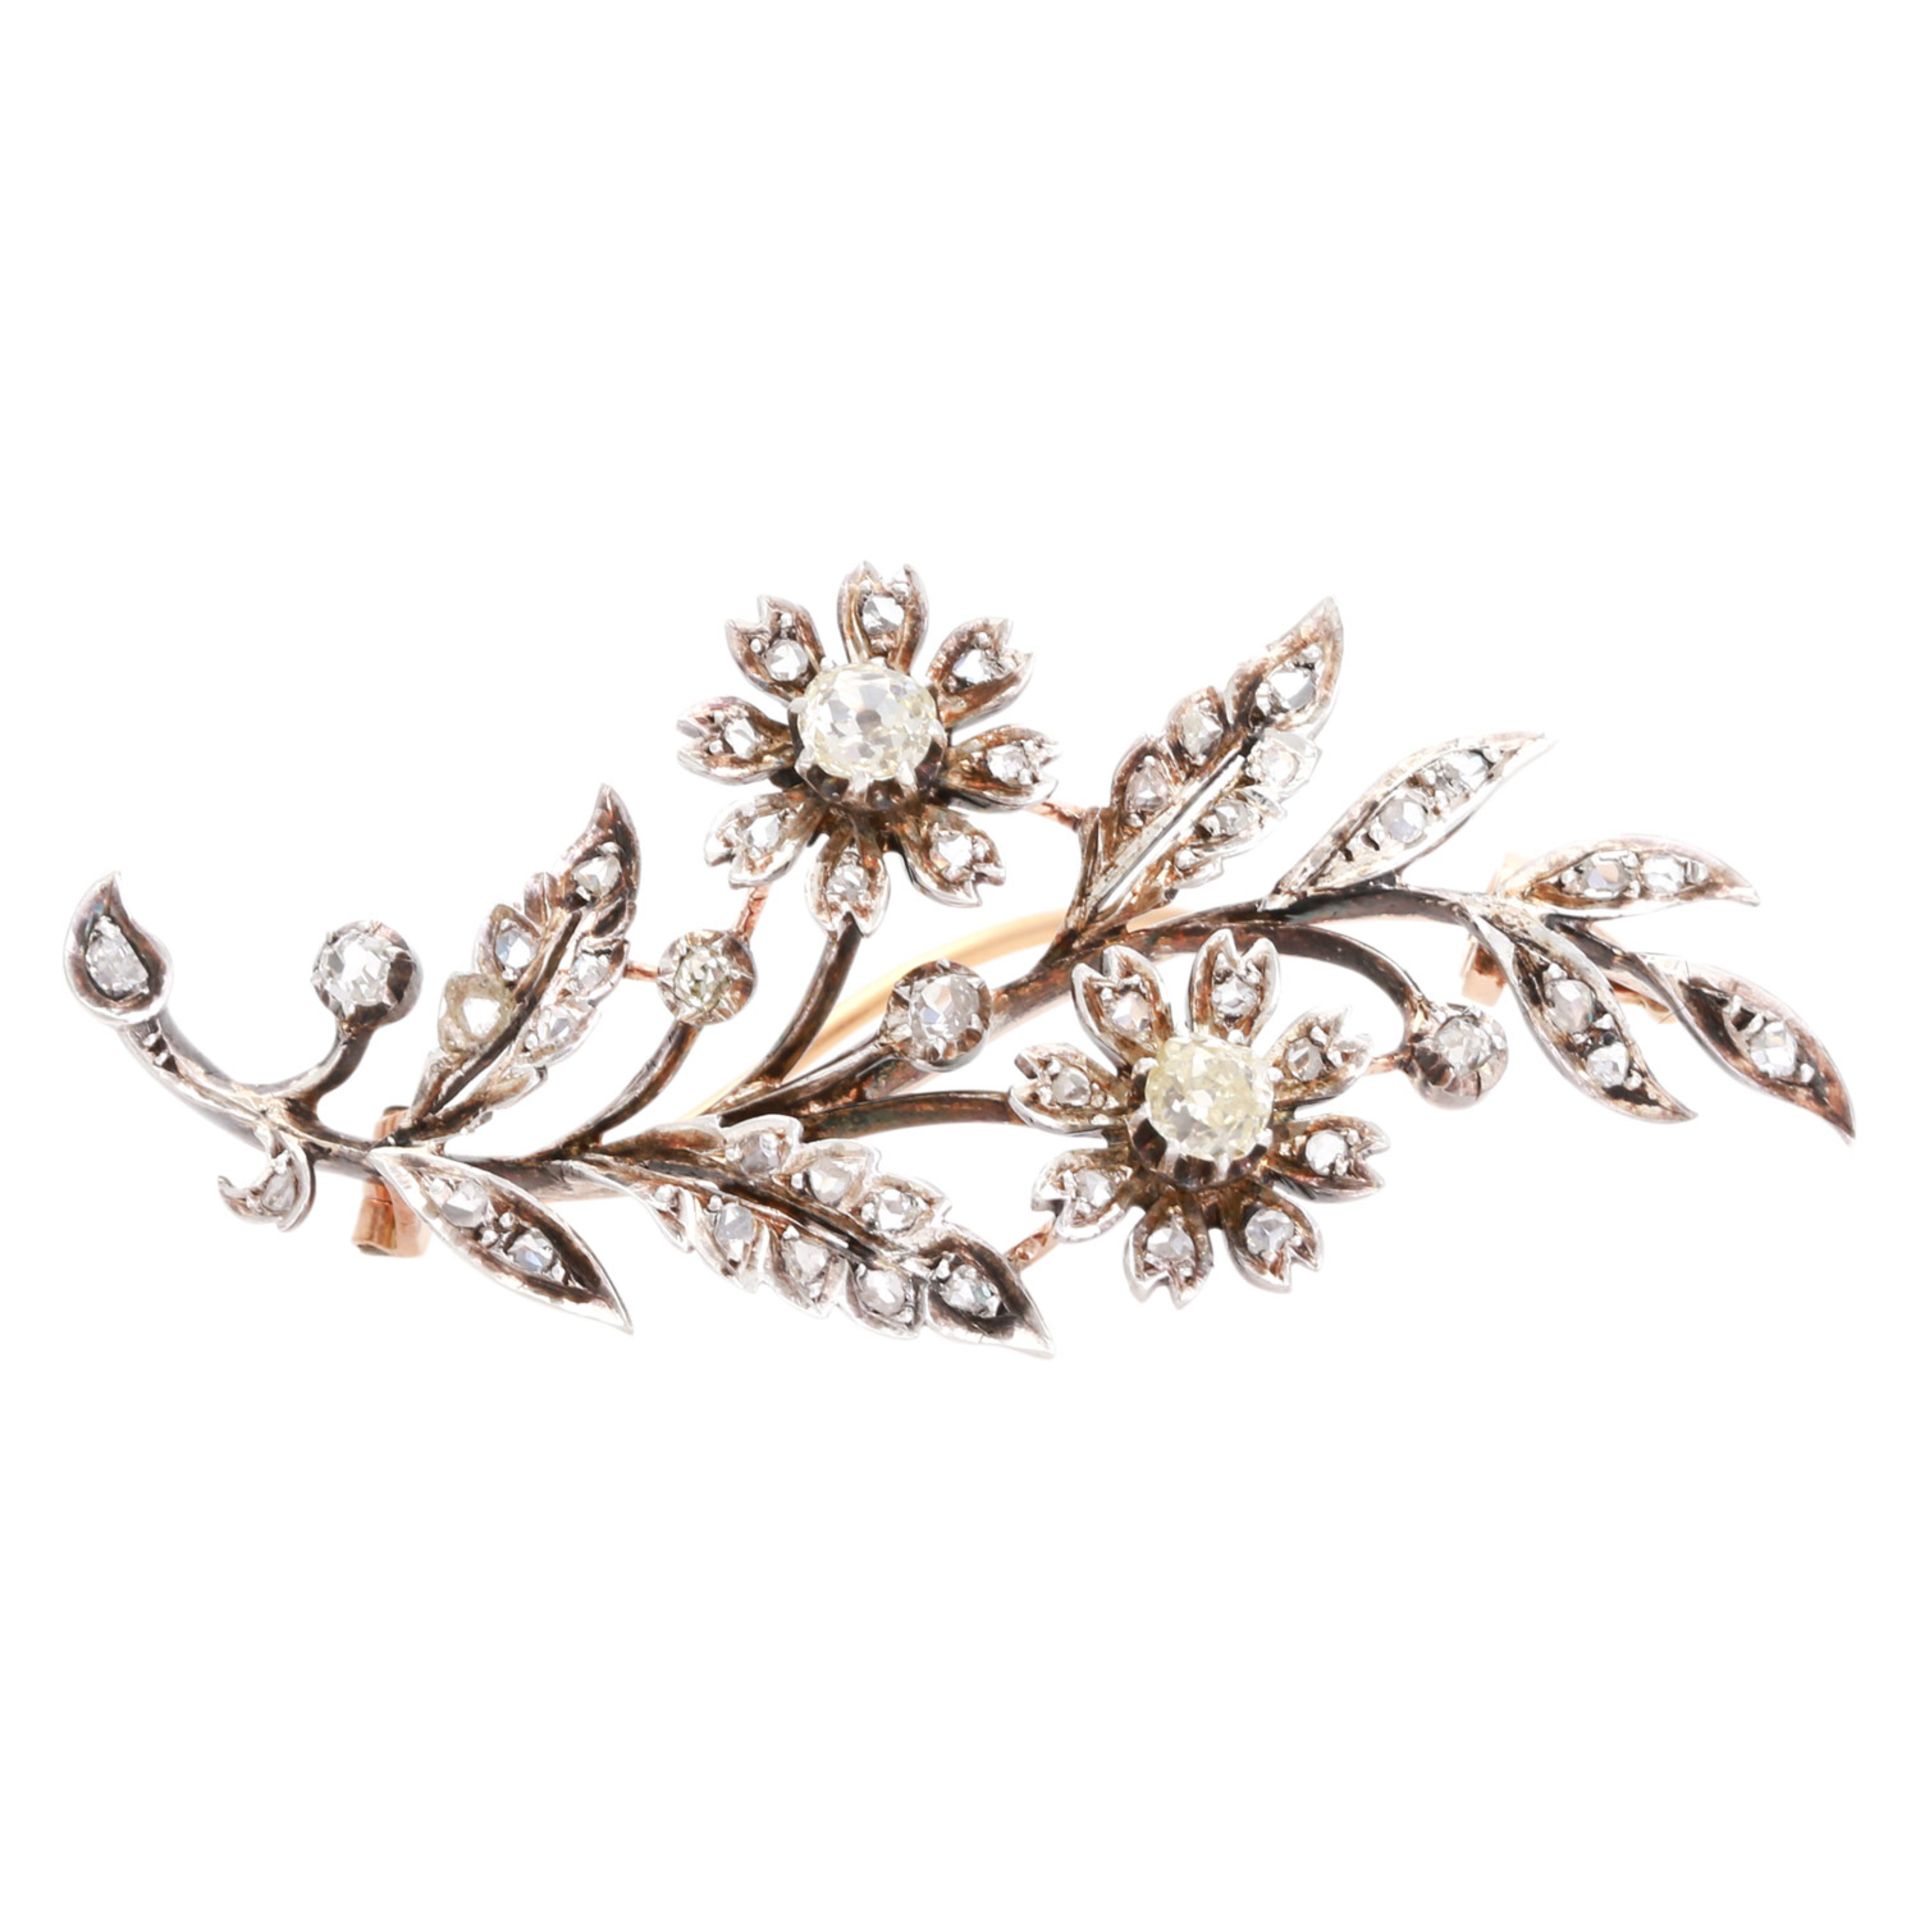 Blütenzweigbrosche mit Diamantbesatz darunter Altschliffdiam. und Diamantrosen zus. ca. 1,1 ct von